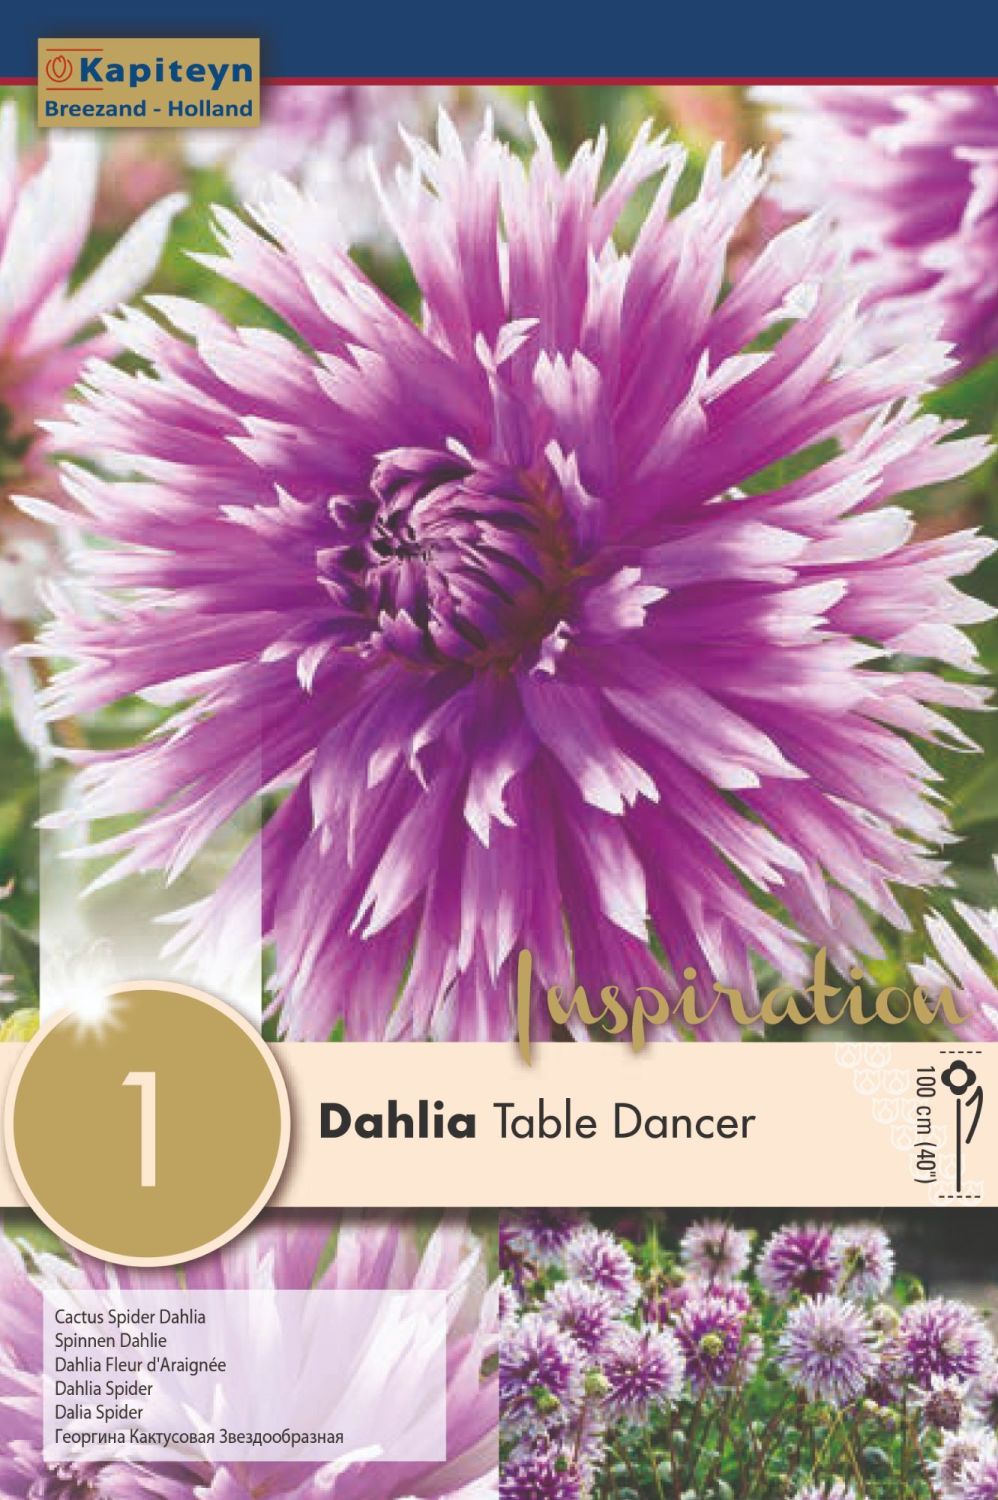 DAHLIA TABLE DANCER